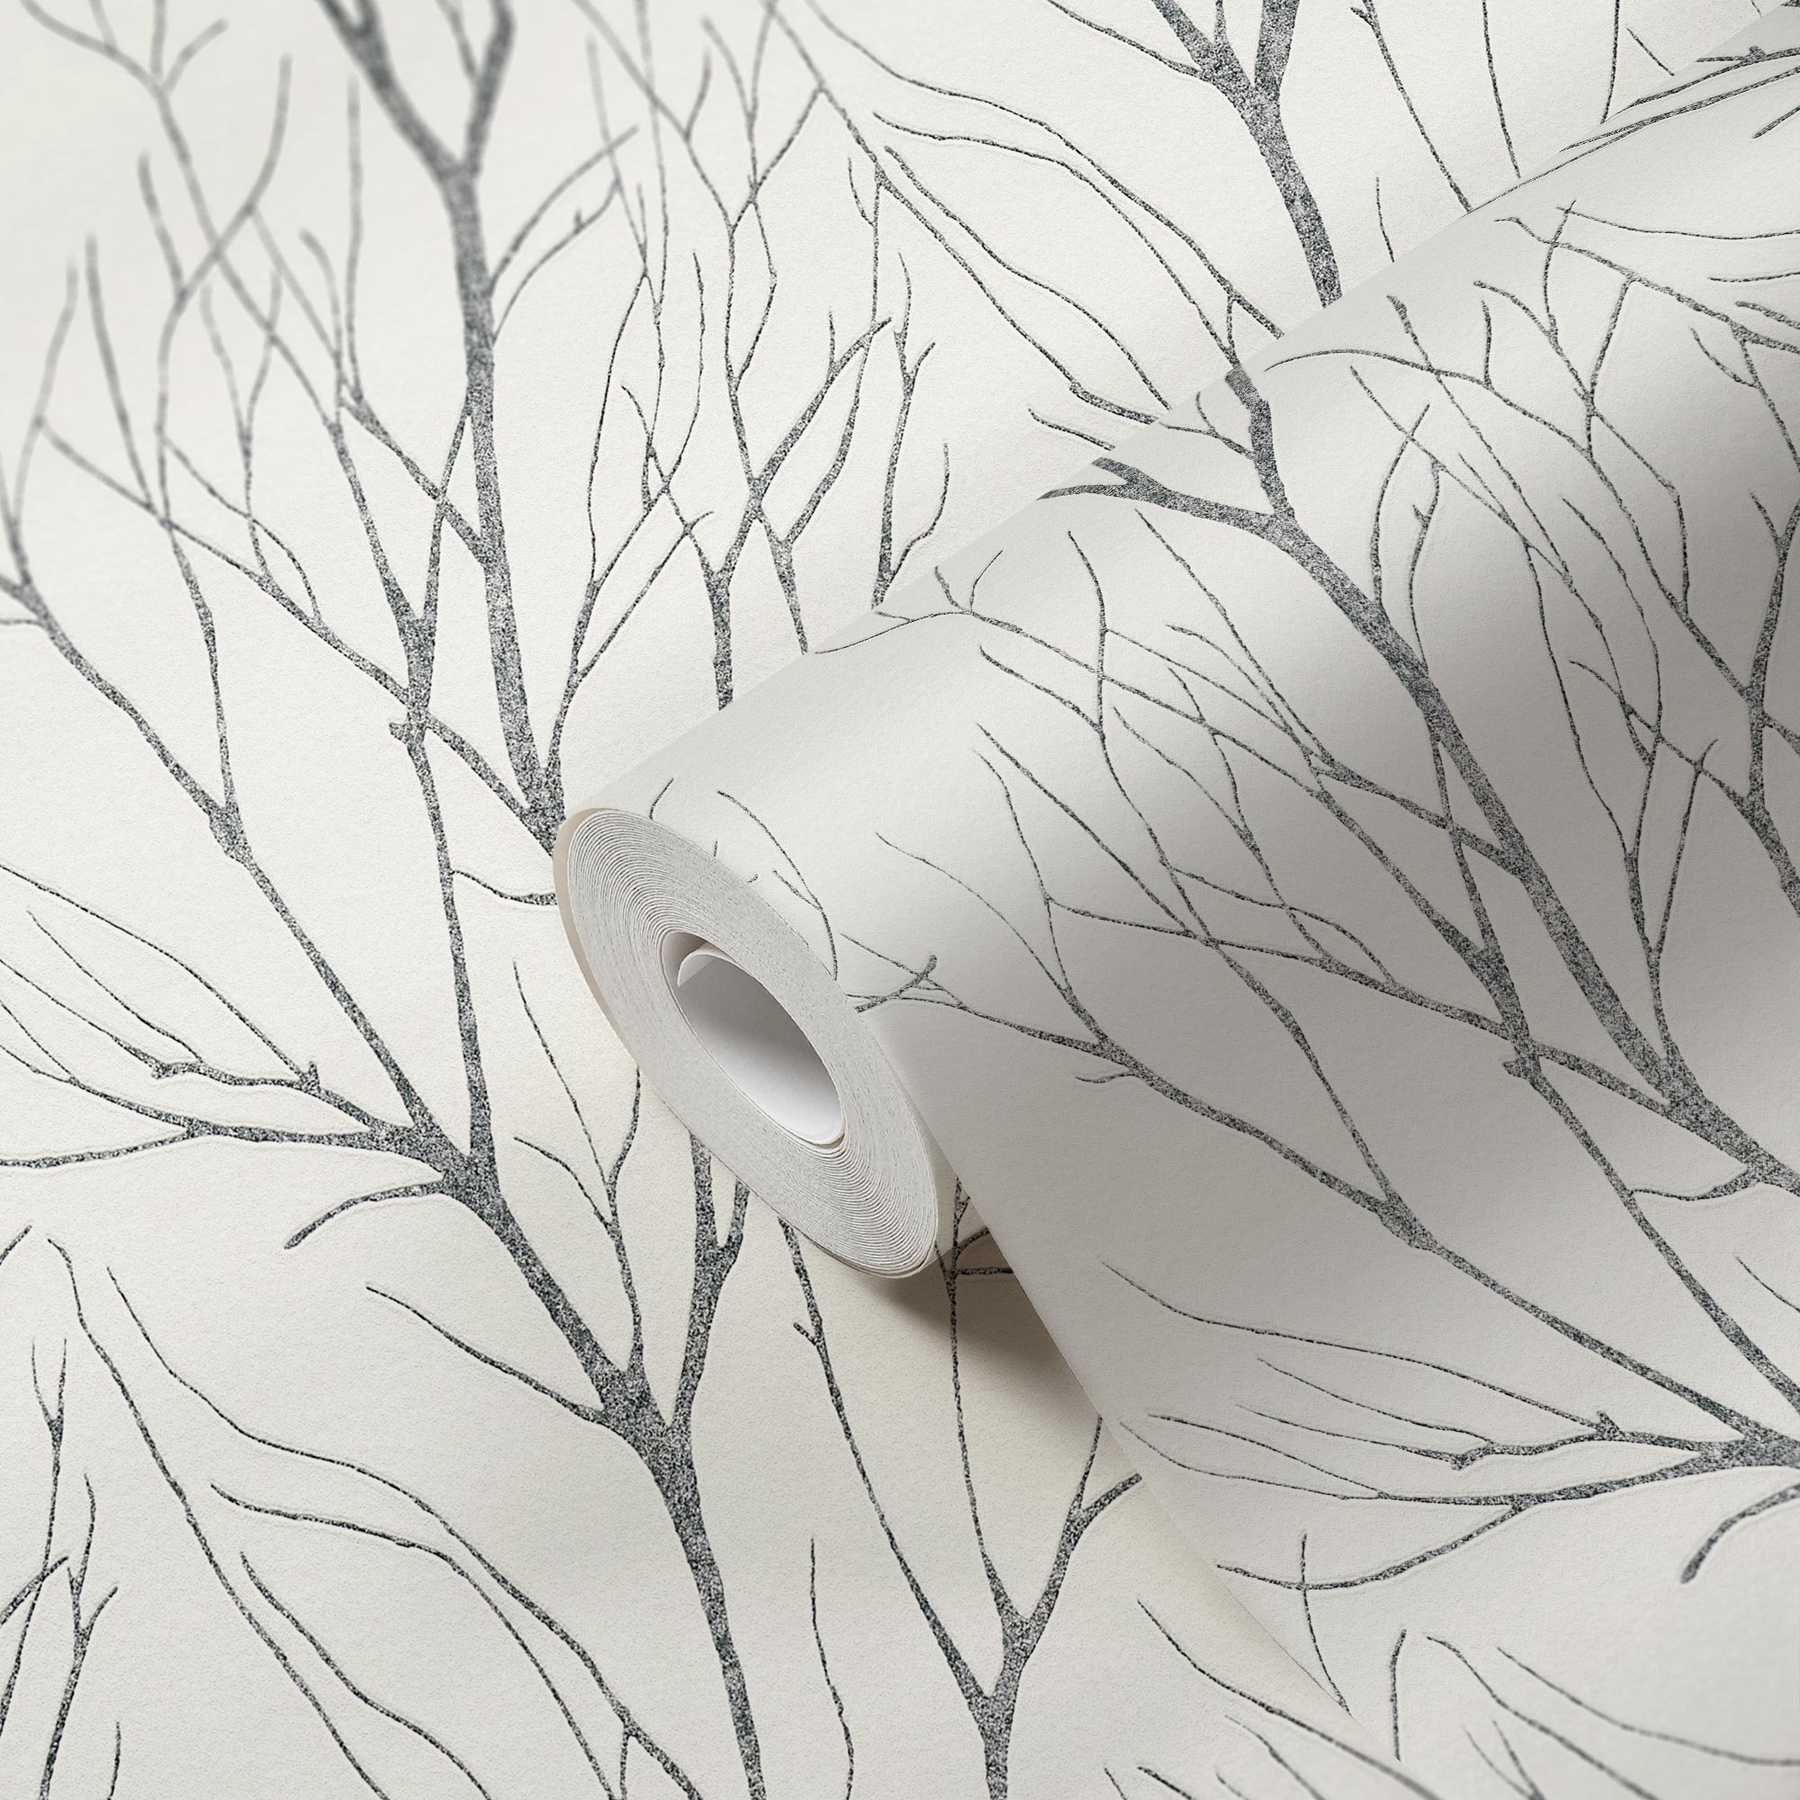             Carta da parati in tessuto non tessuto con motivo ad albero ed effetto metallizzato - grigio, nero, bianco
        